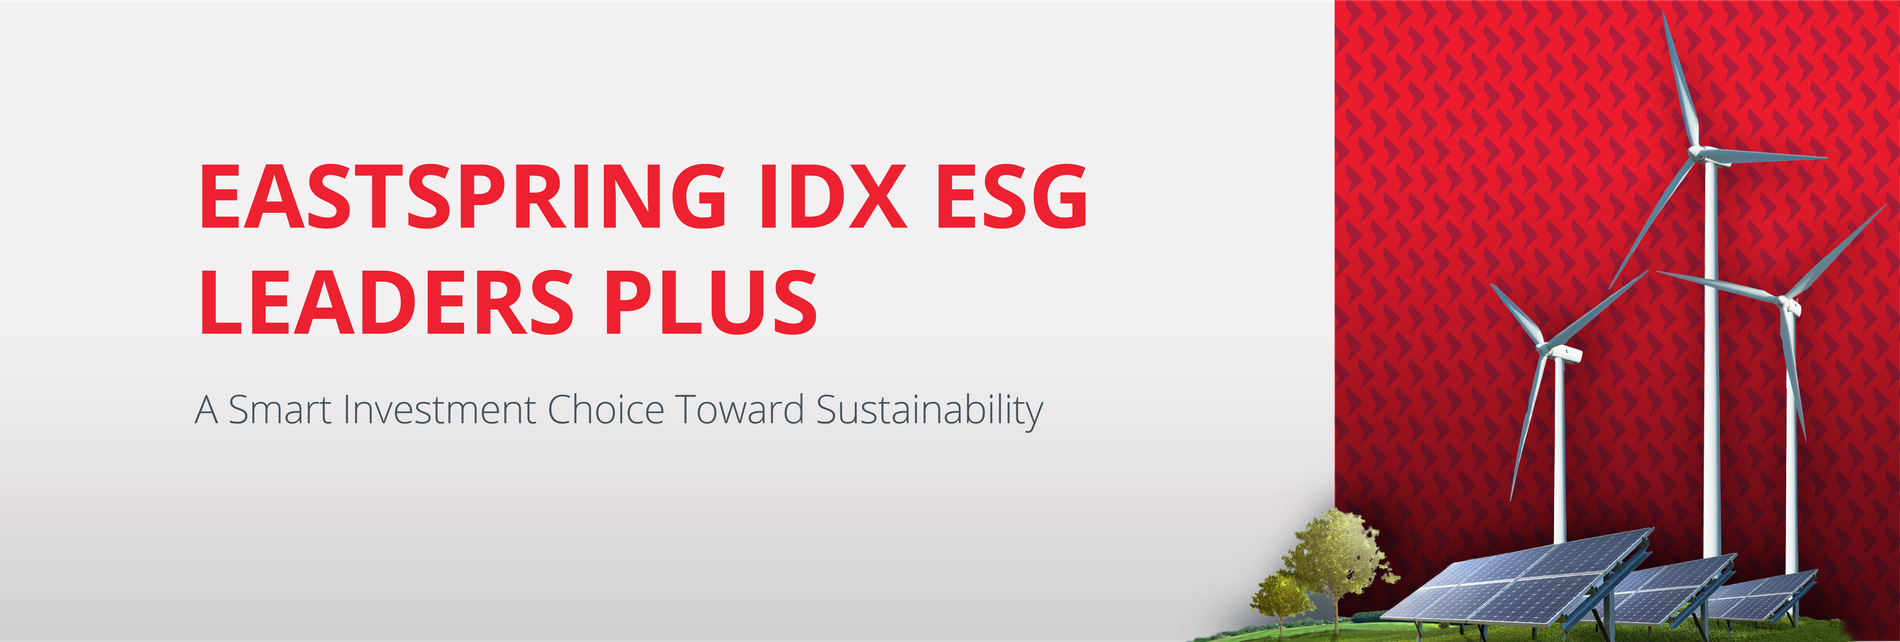 IDX ESG Leaders Plus